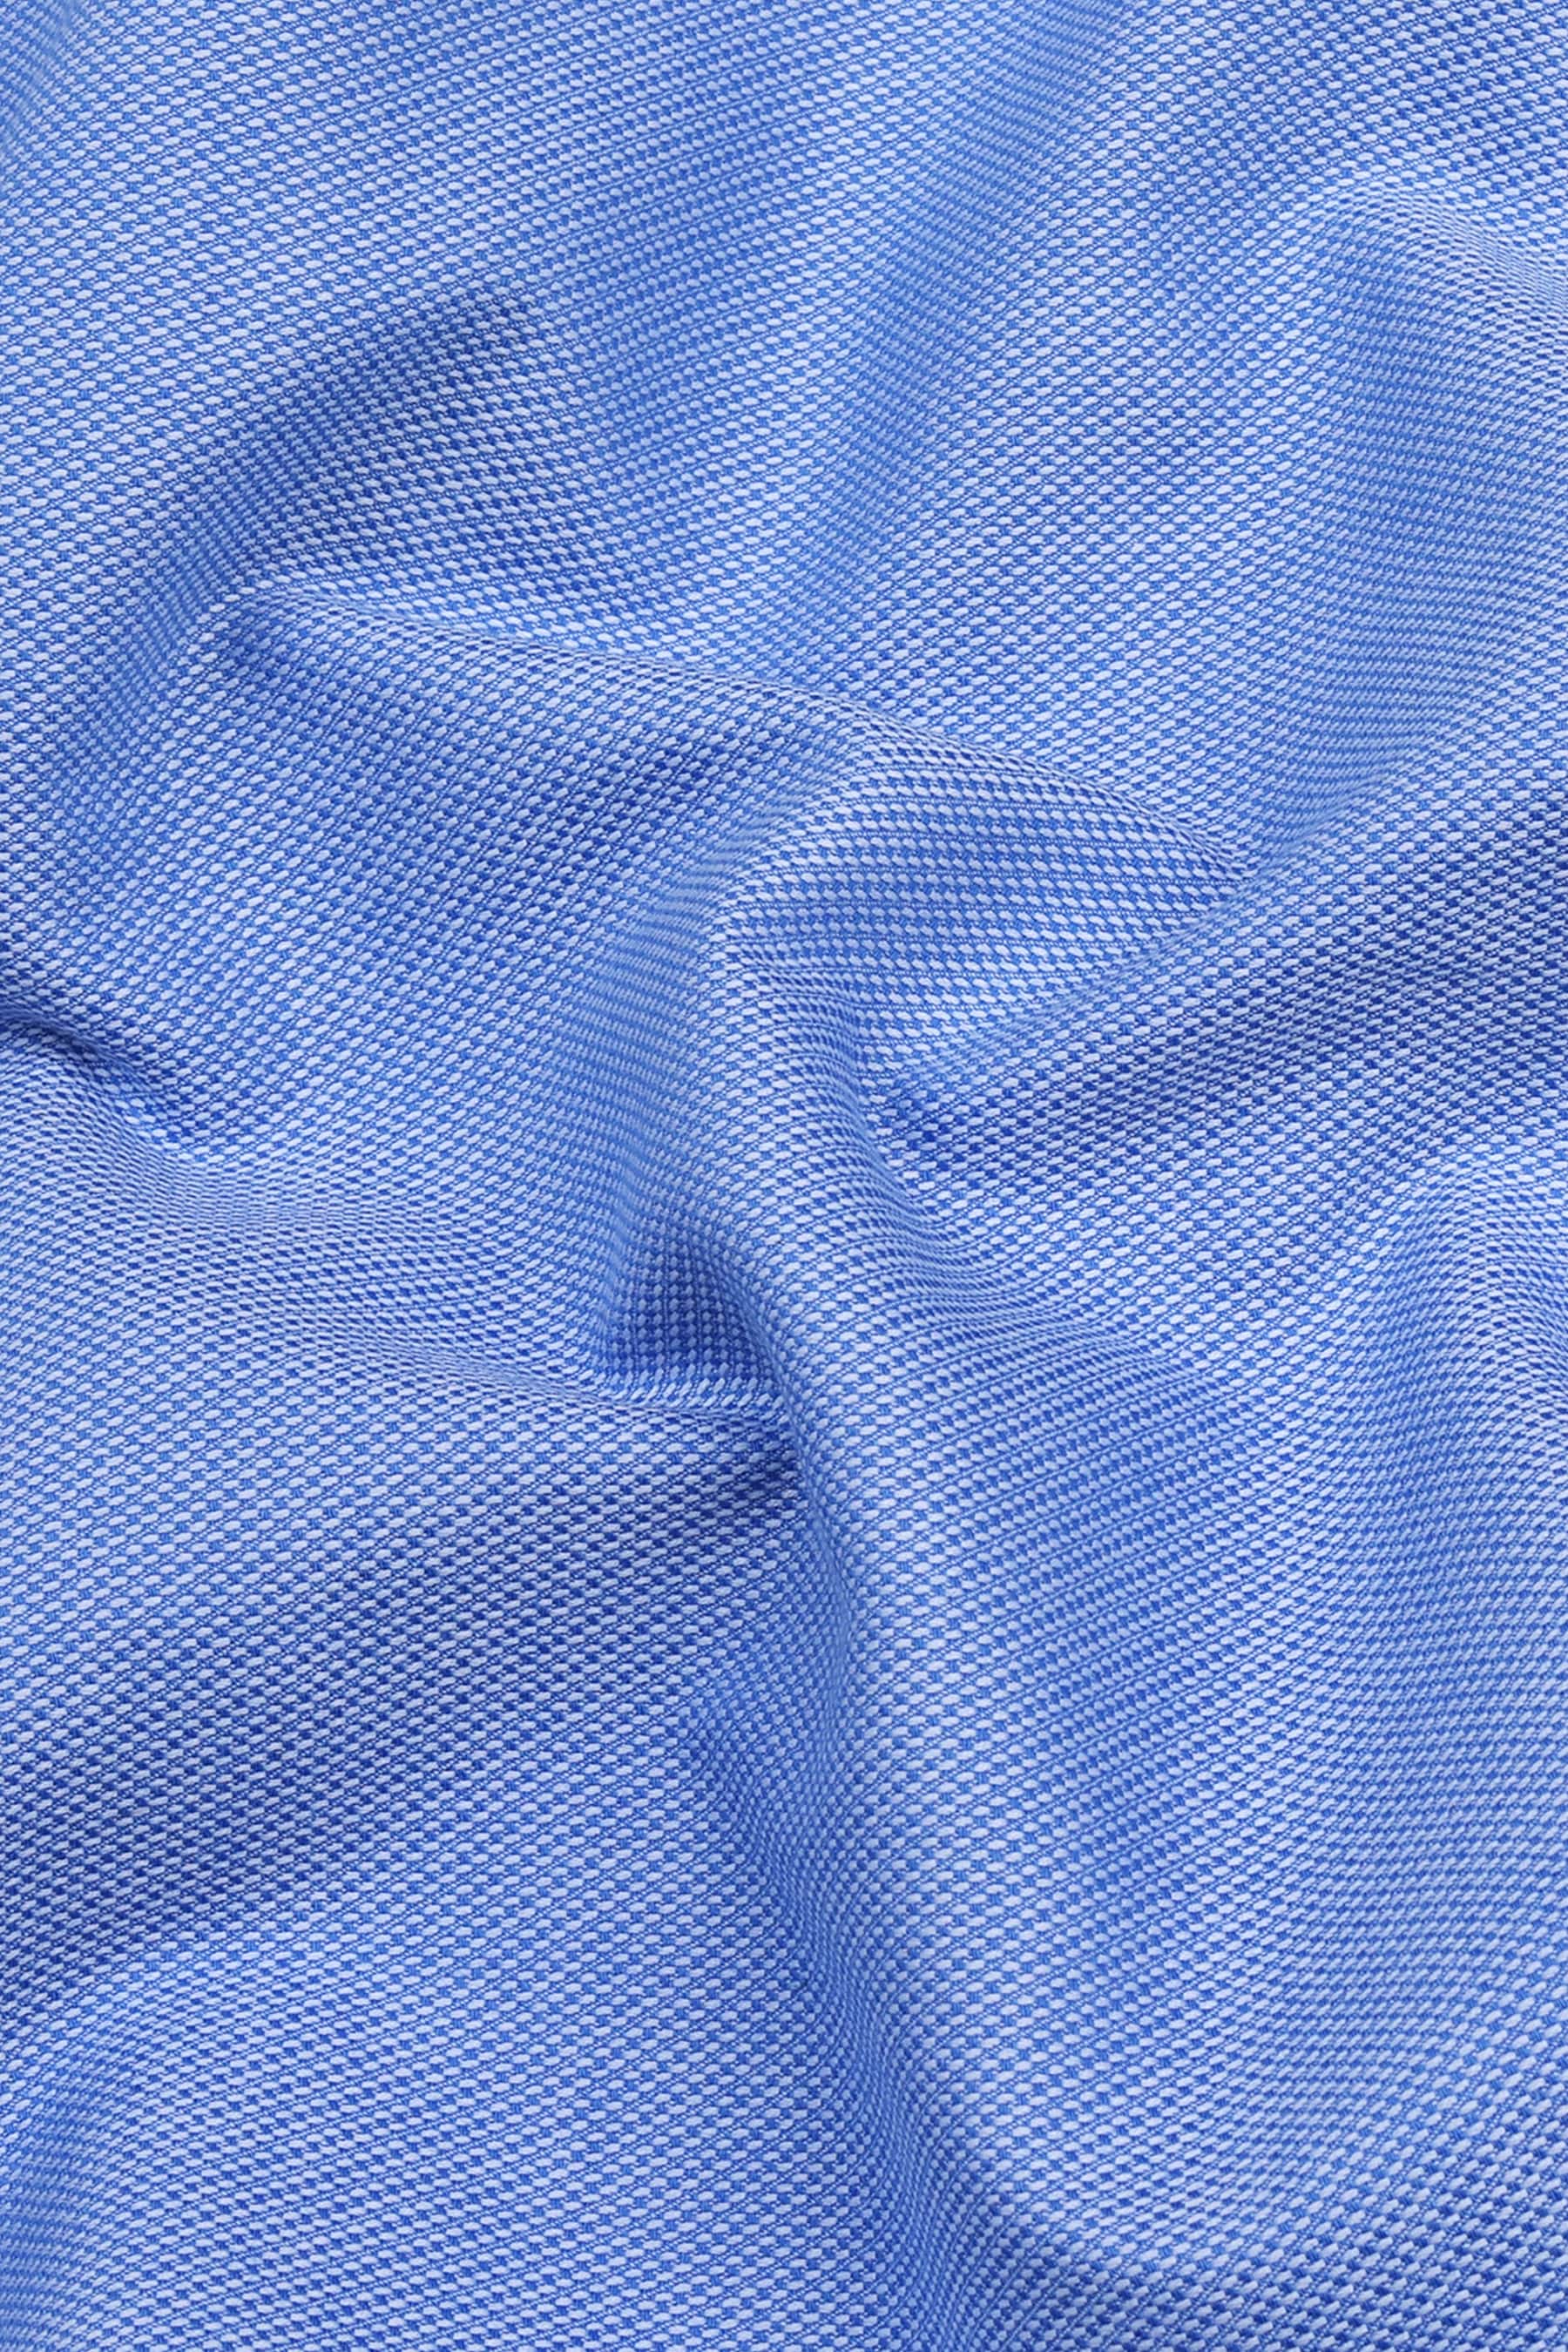 Azure blue dobby texture cotton shirt